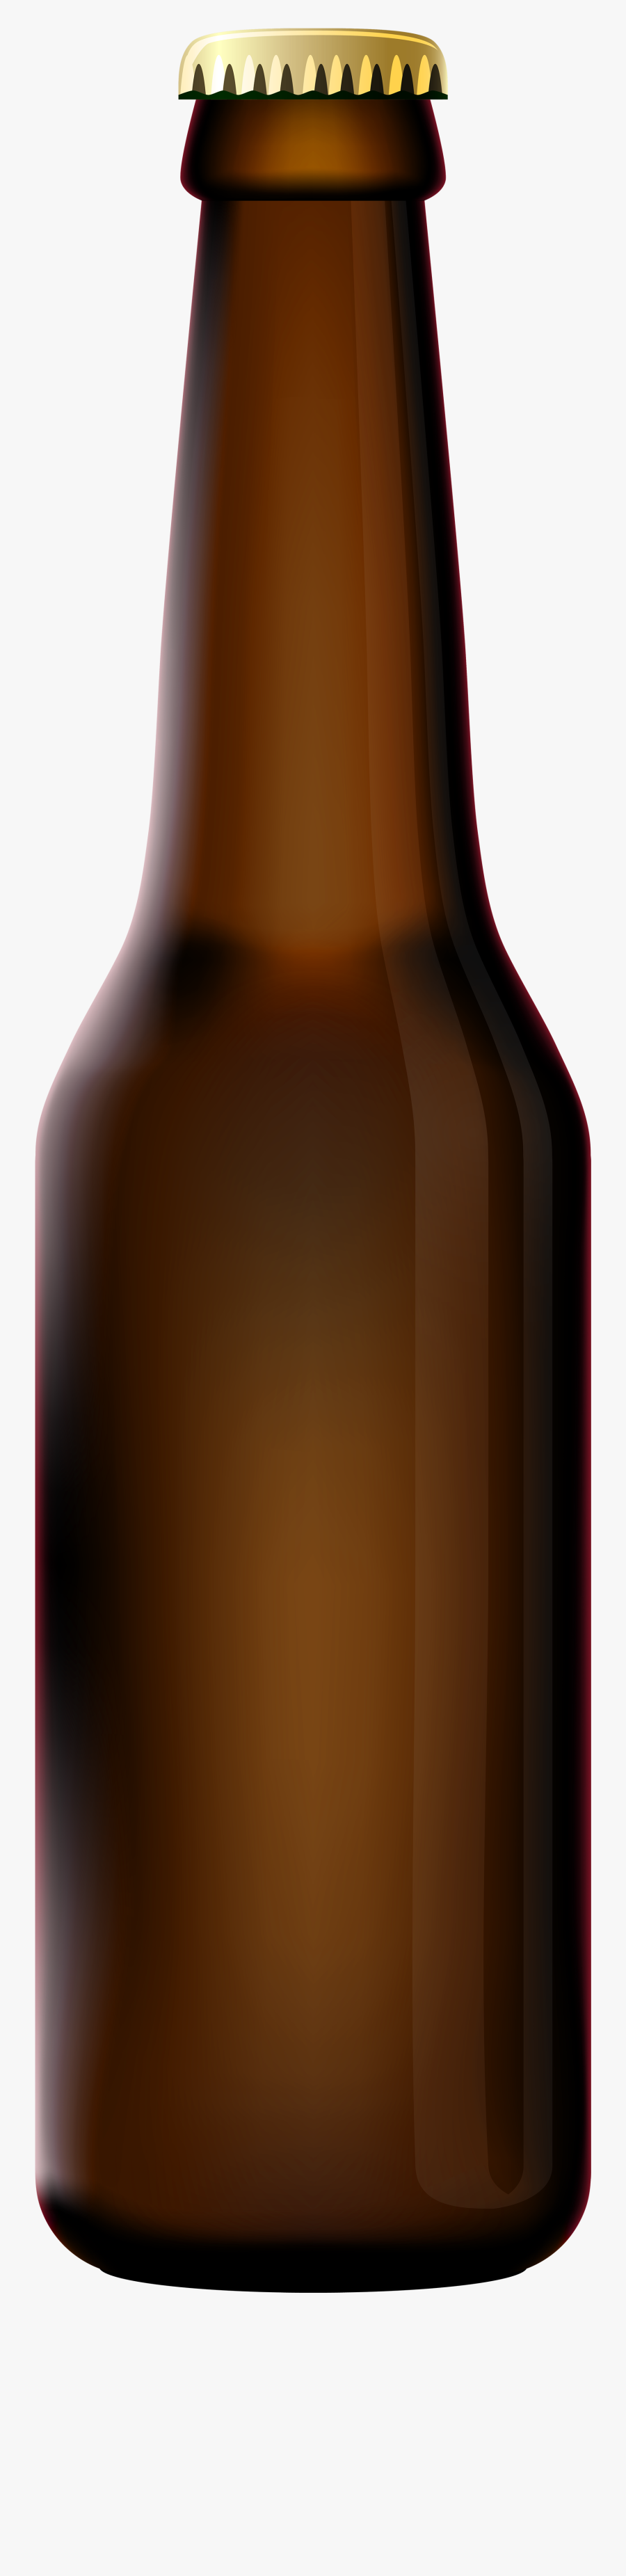 Beer Bottle Clipart Pilsner Beer By Juhele Final - Transparent Beer Bottle Png, Transparent Clipart